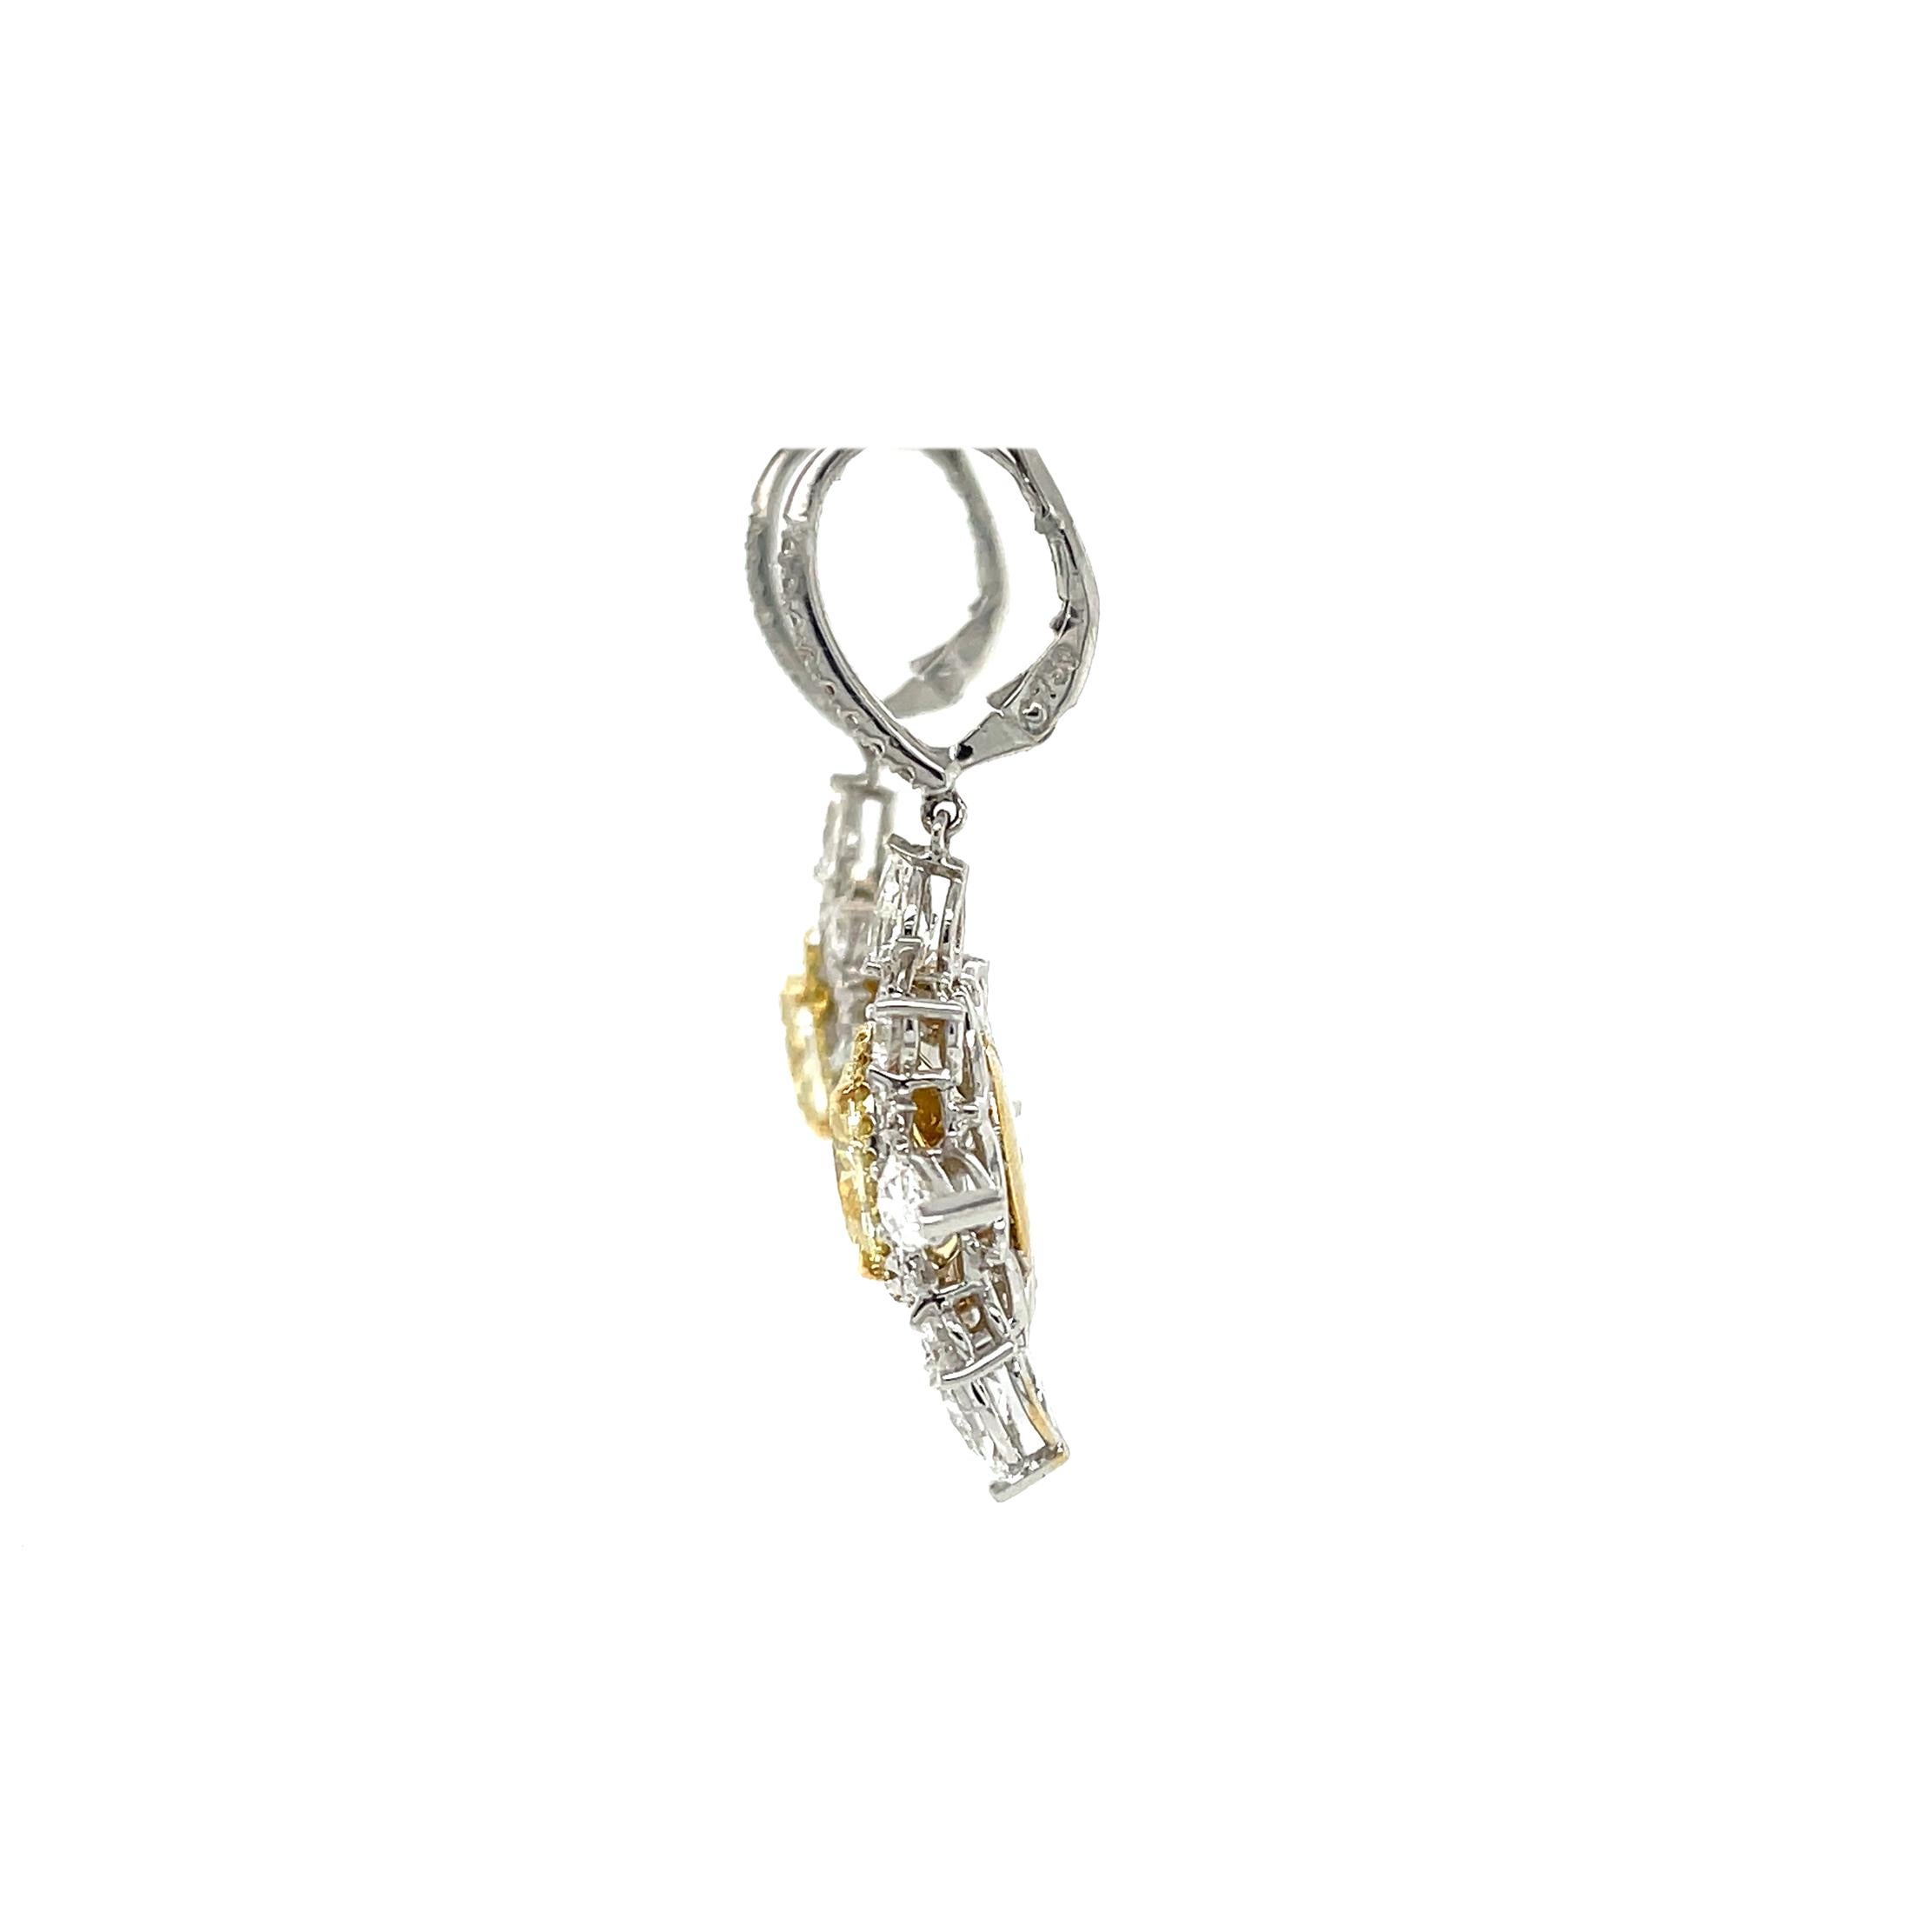 Oval Cut 4 Carat Fancy Light Yellow Diamond Drop Earrings, Gia Certified IF, in 18k Gold. For Sale